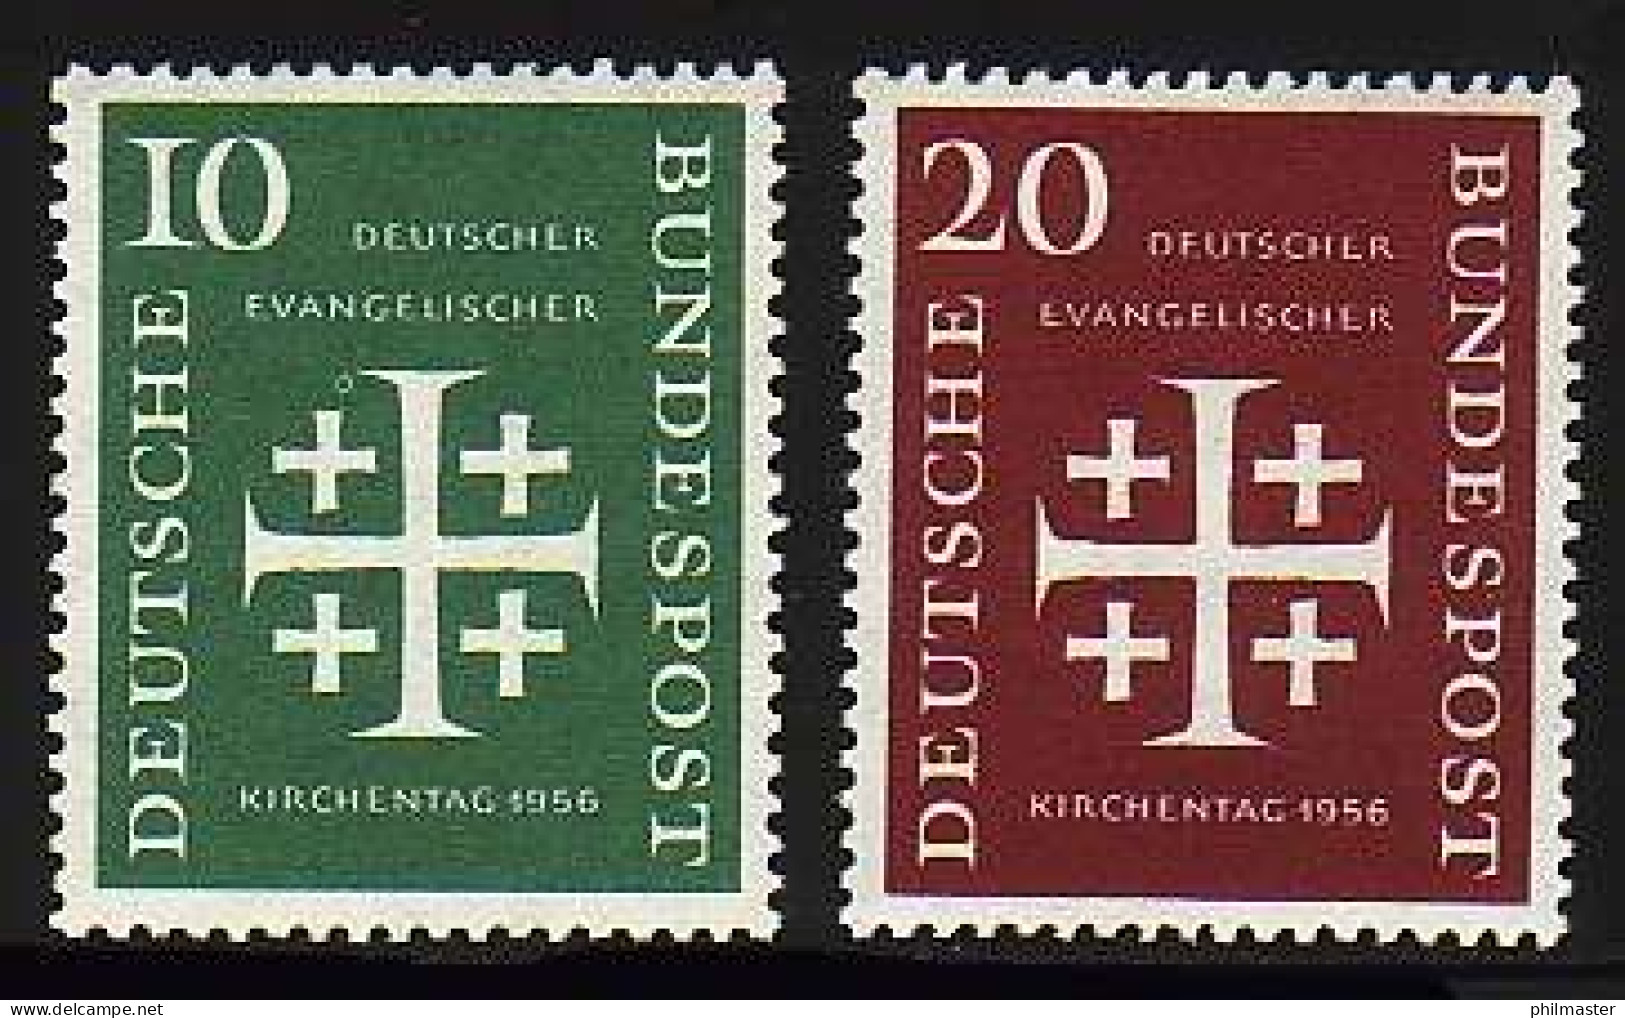 235-236 Evangelischer Kirchentag 1956 - Satz Postfrisch ** - Nuovi